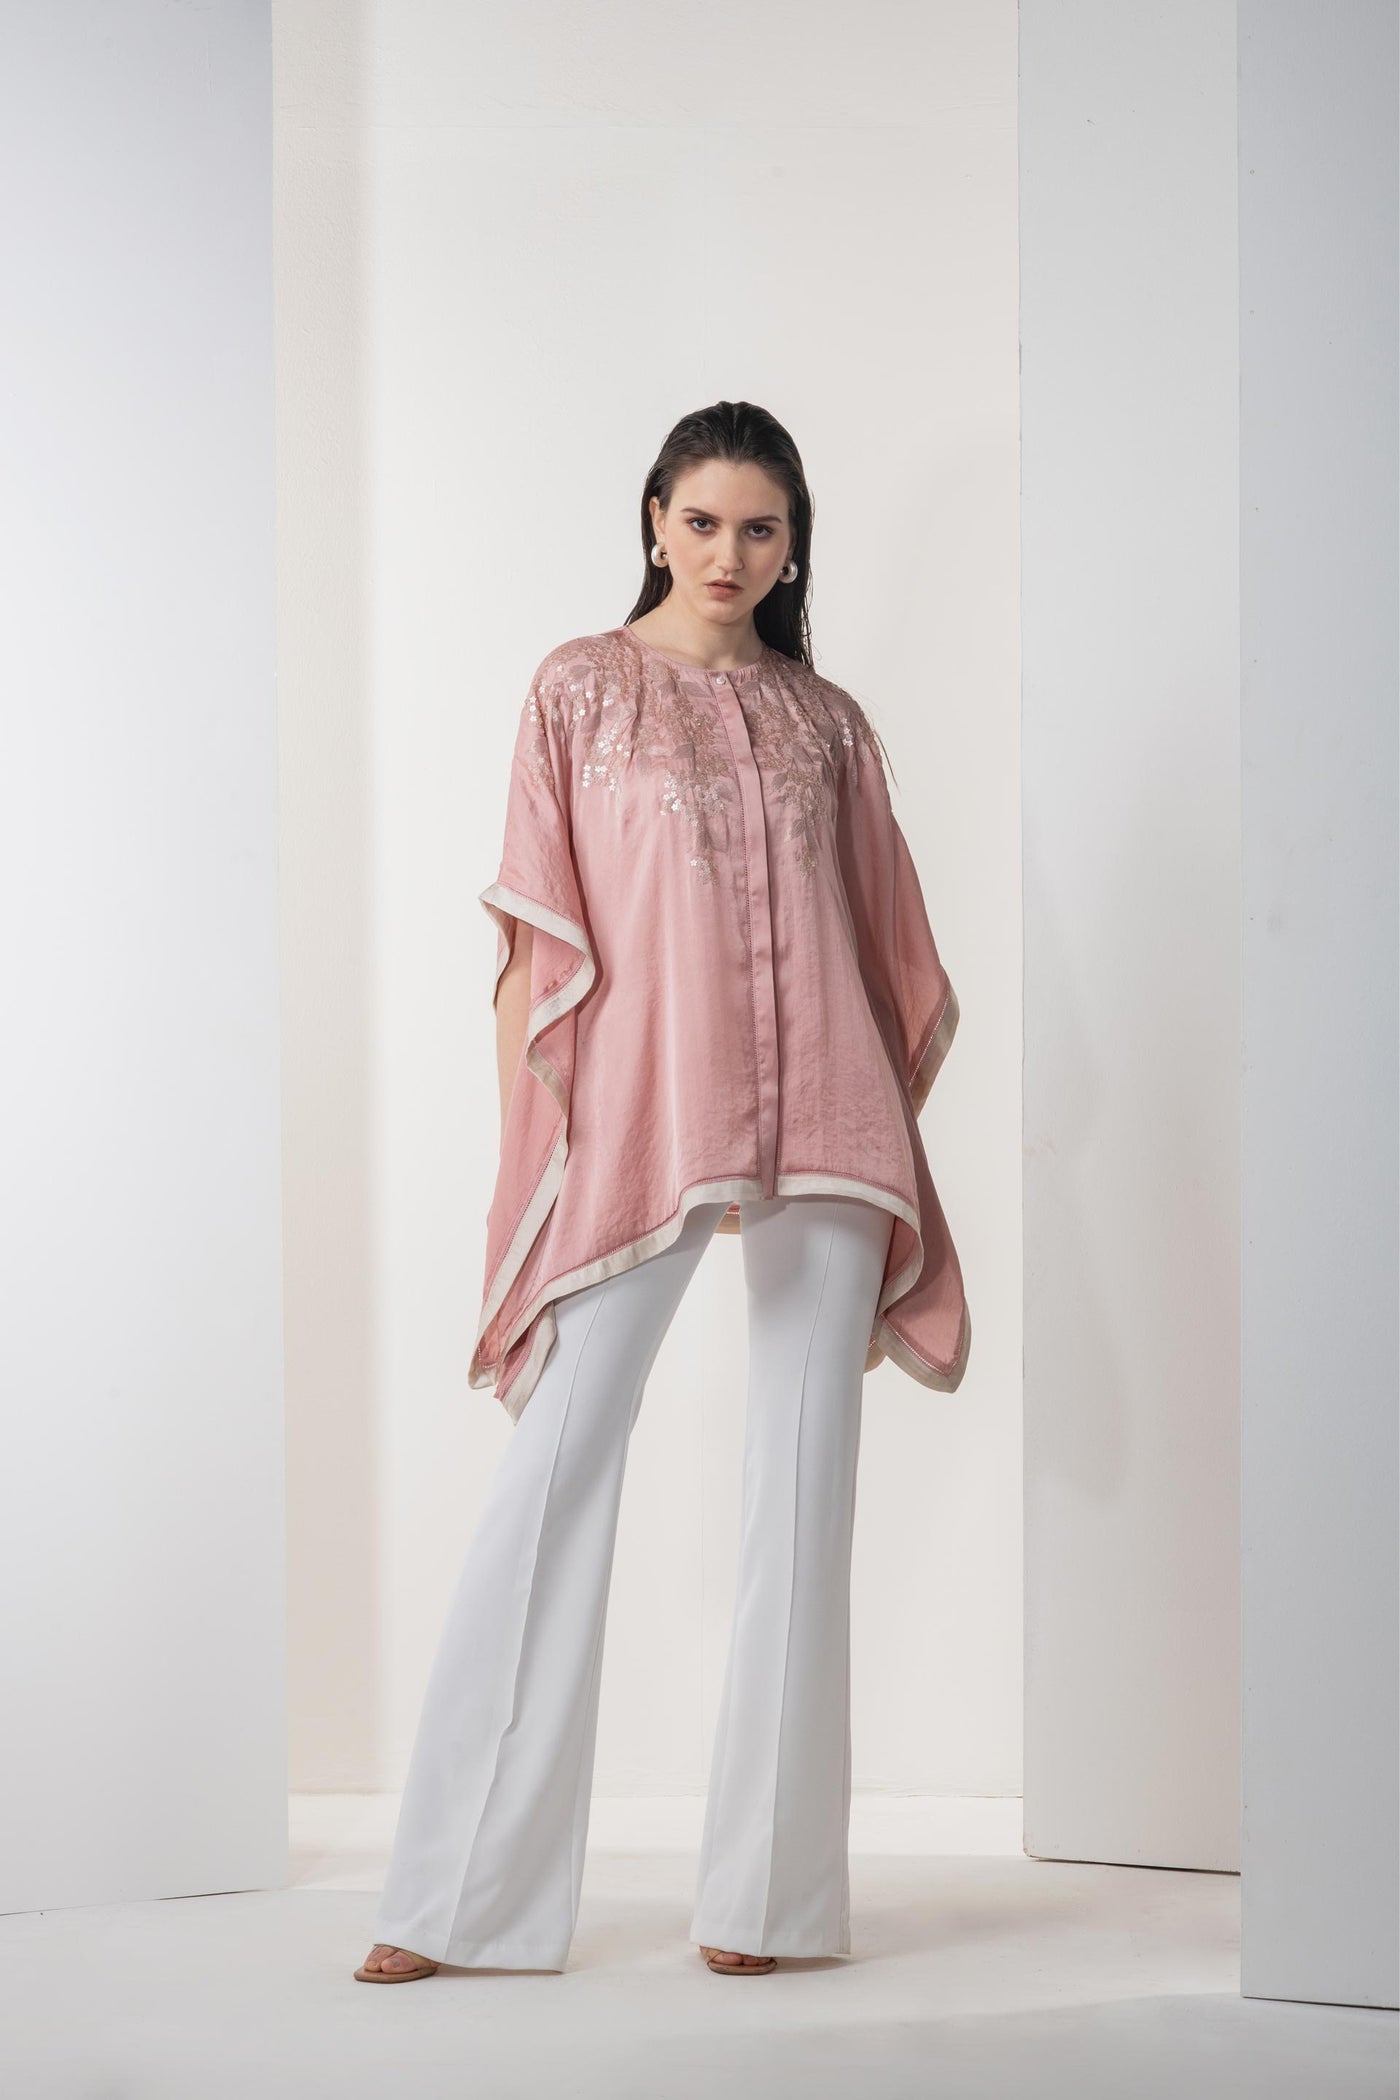 Namrata Joshipura Amaryllis Kaftan Top pink western indian designer wear online shopping melange singapore